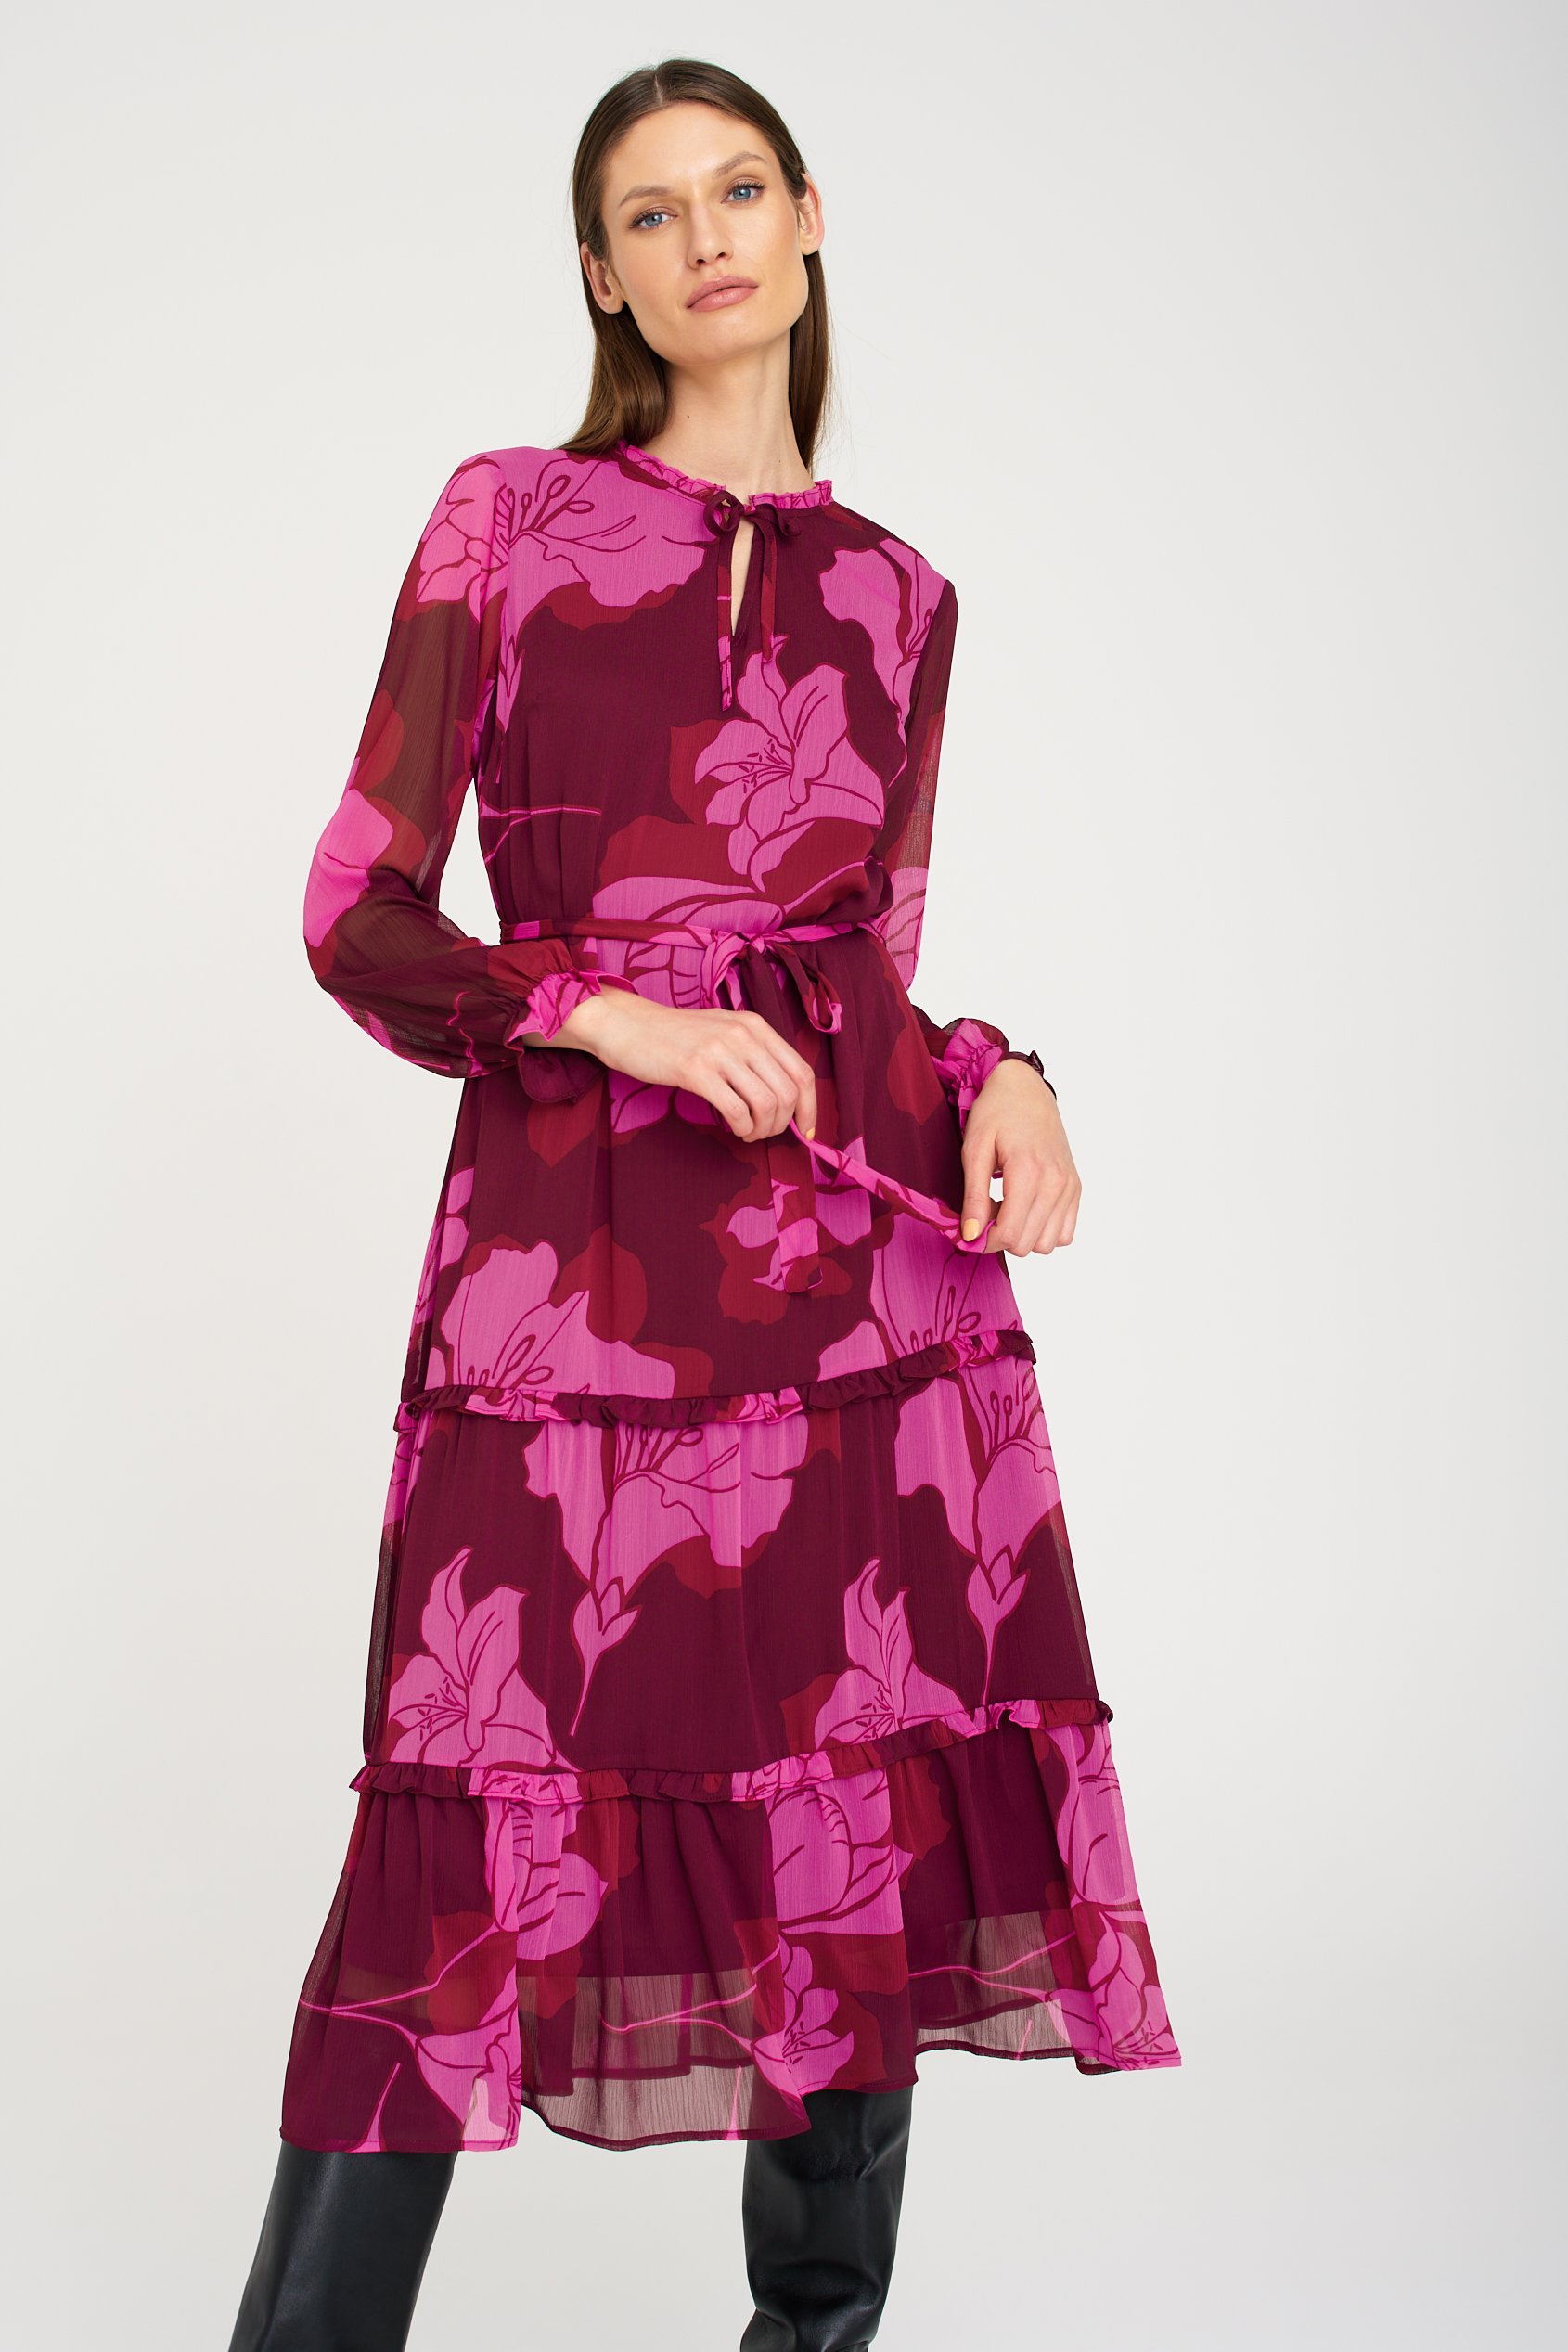 Stylowa sukienka z falbanami, nadruk w różowe kwiaty